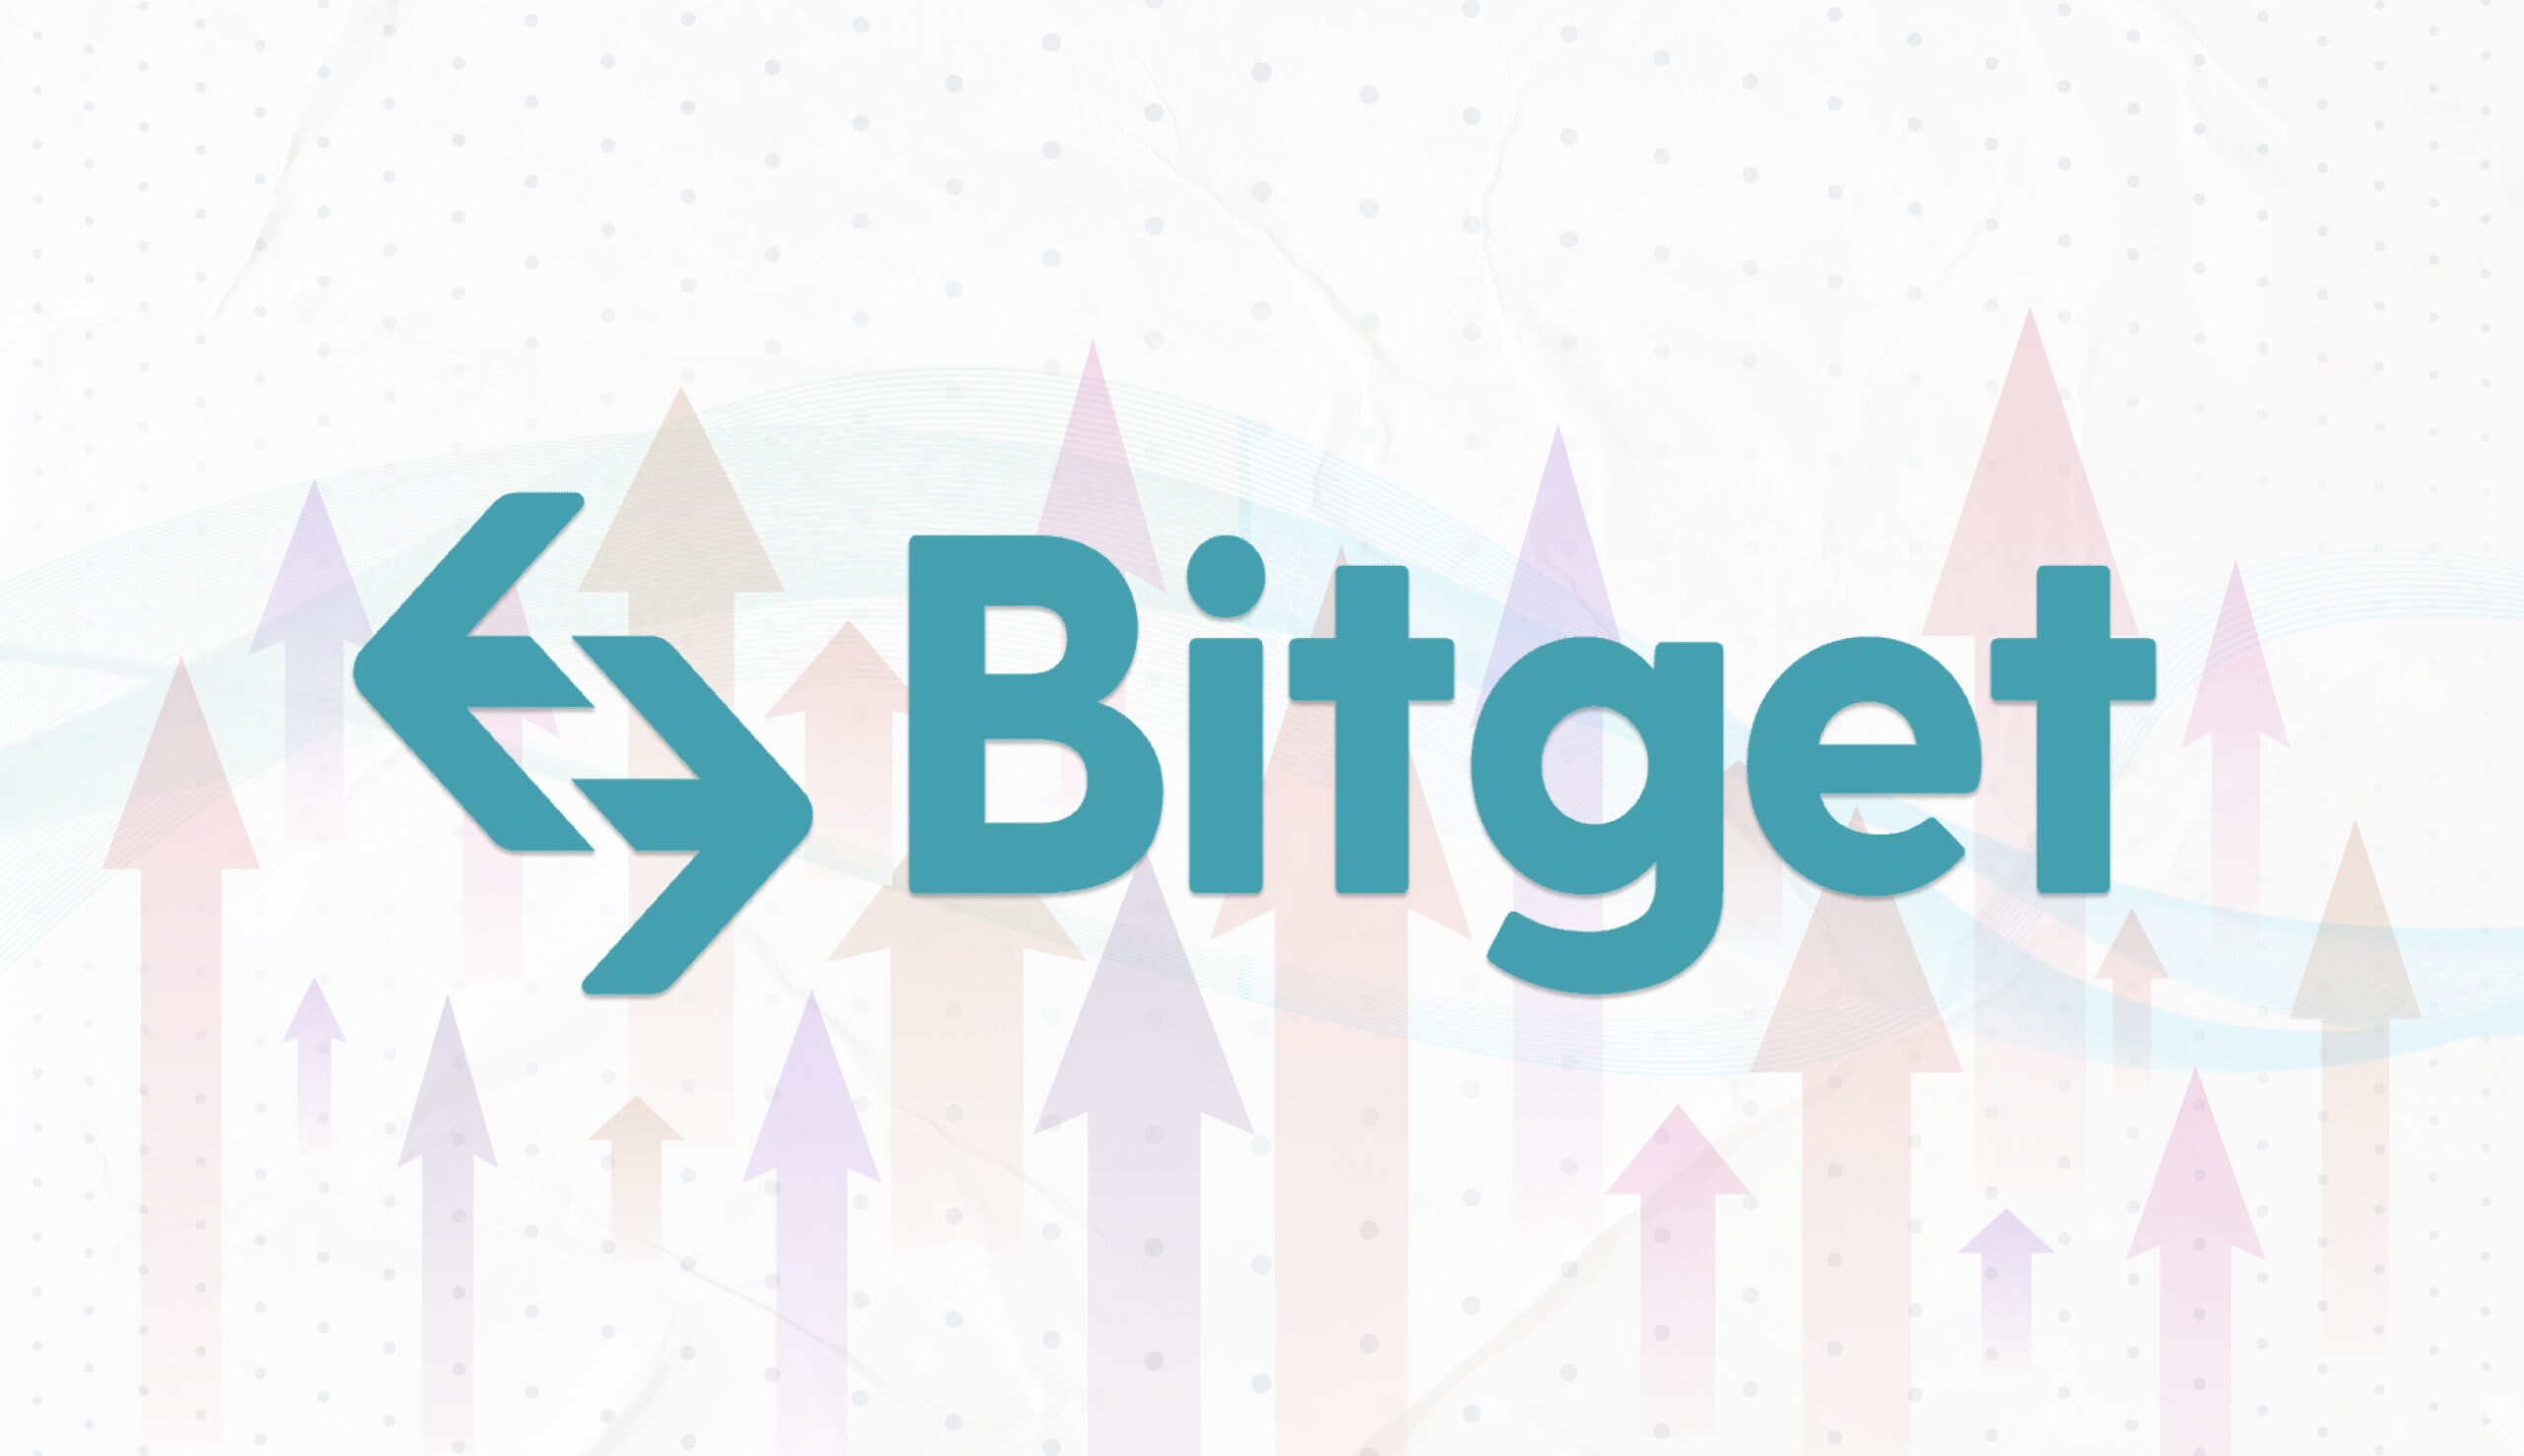 Bitget додали новий інструмент “Strategy Plaza”: підписка на найкращих стратегів з автотрейдингом. Головний колаж новини.